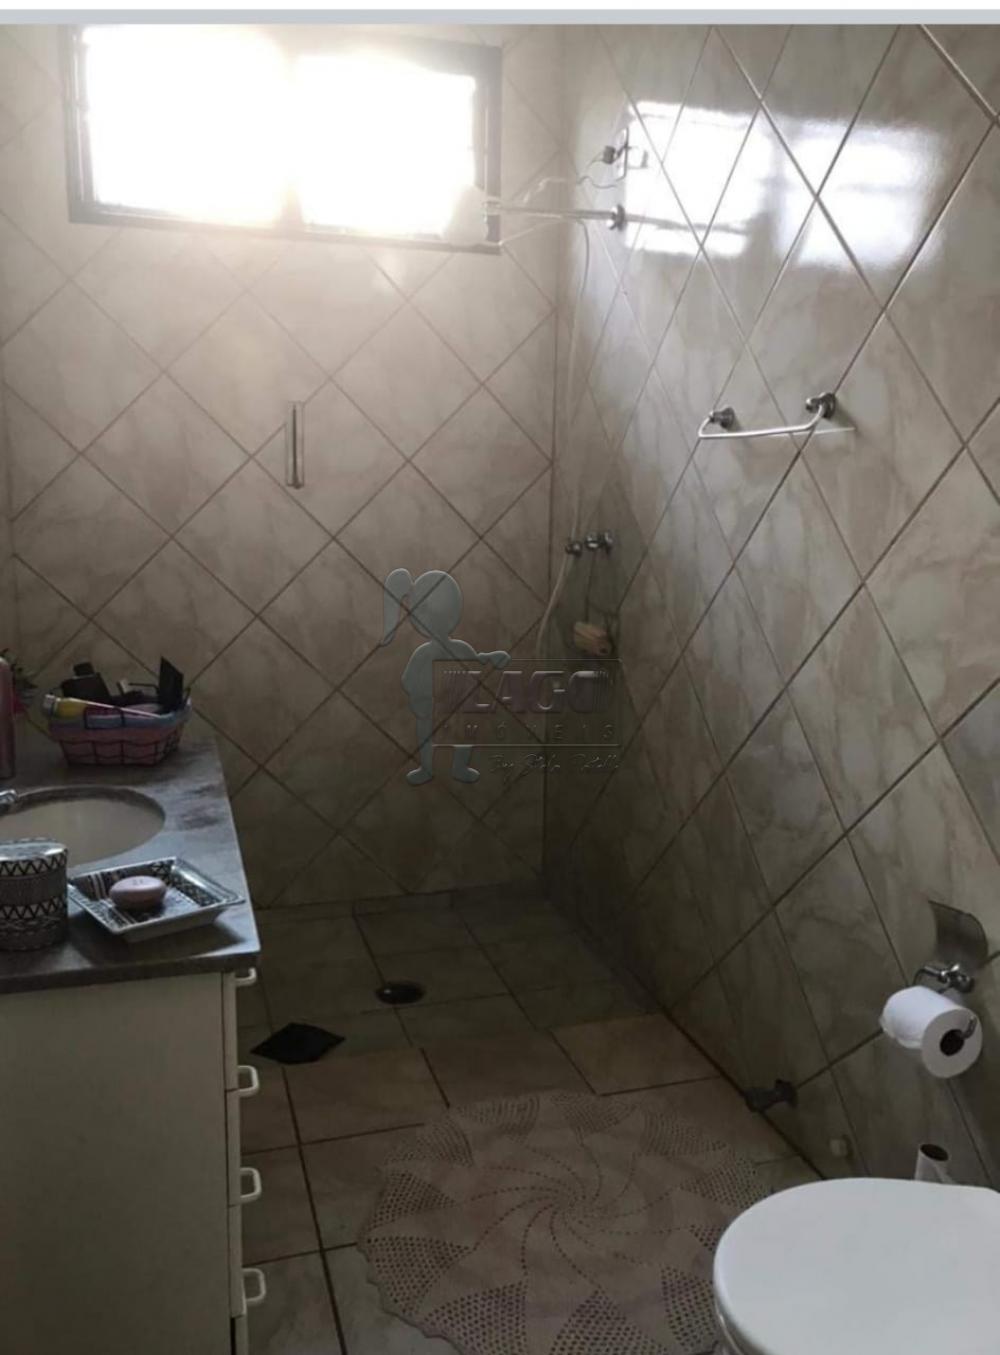 Comprar Casas / Padrão em Ribeirão Preto R$ 430.000,00 - Foto 6